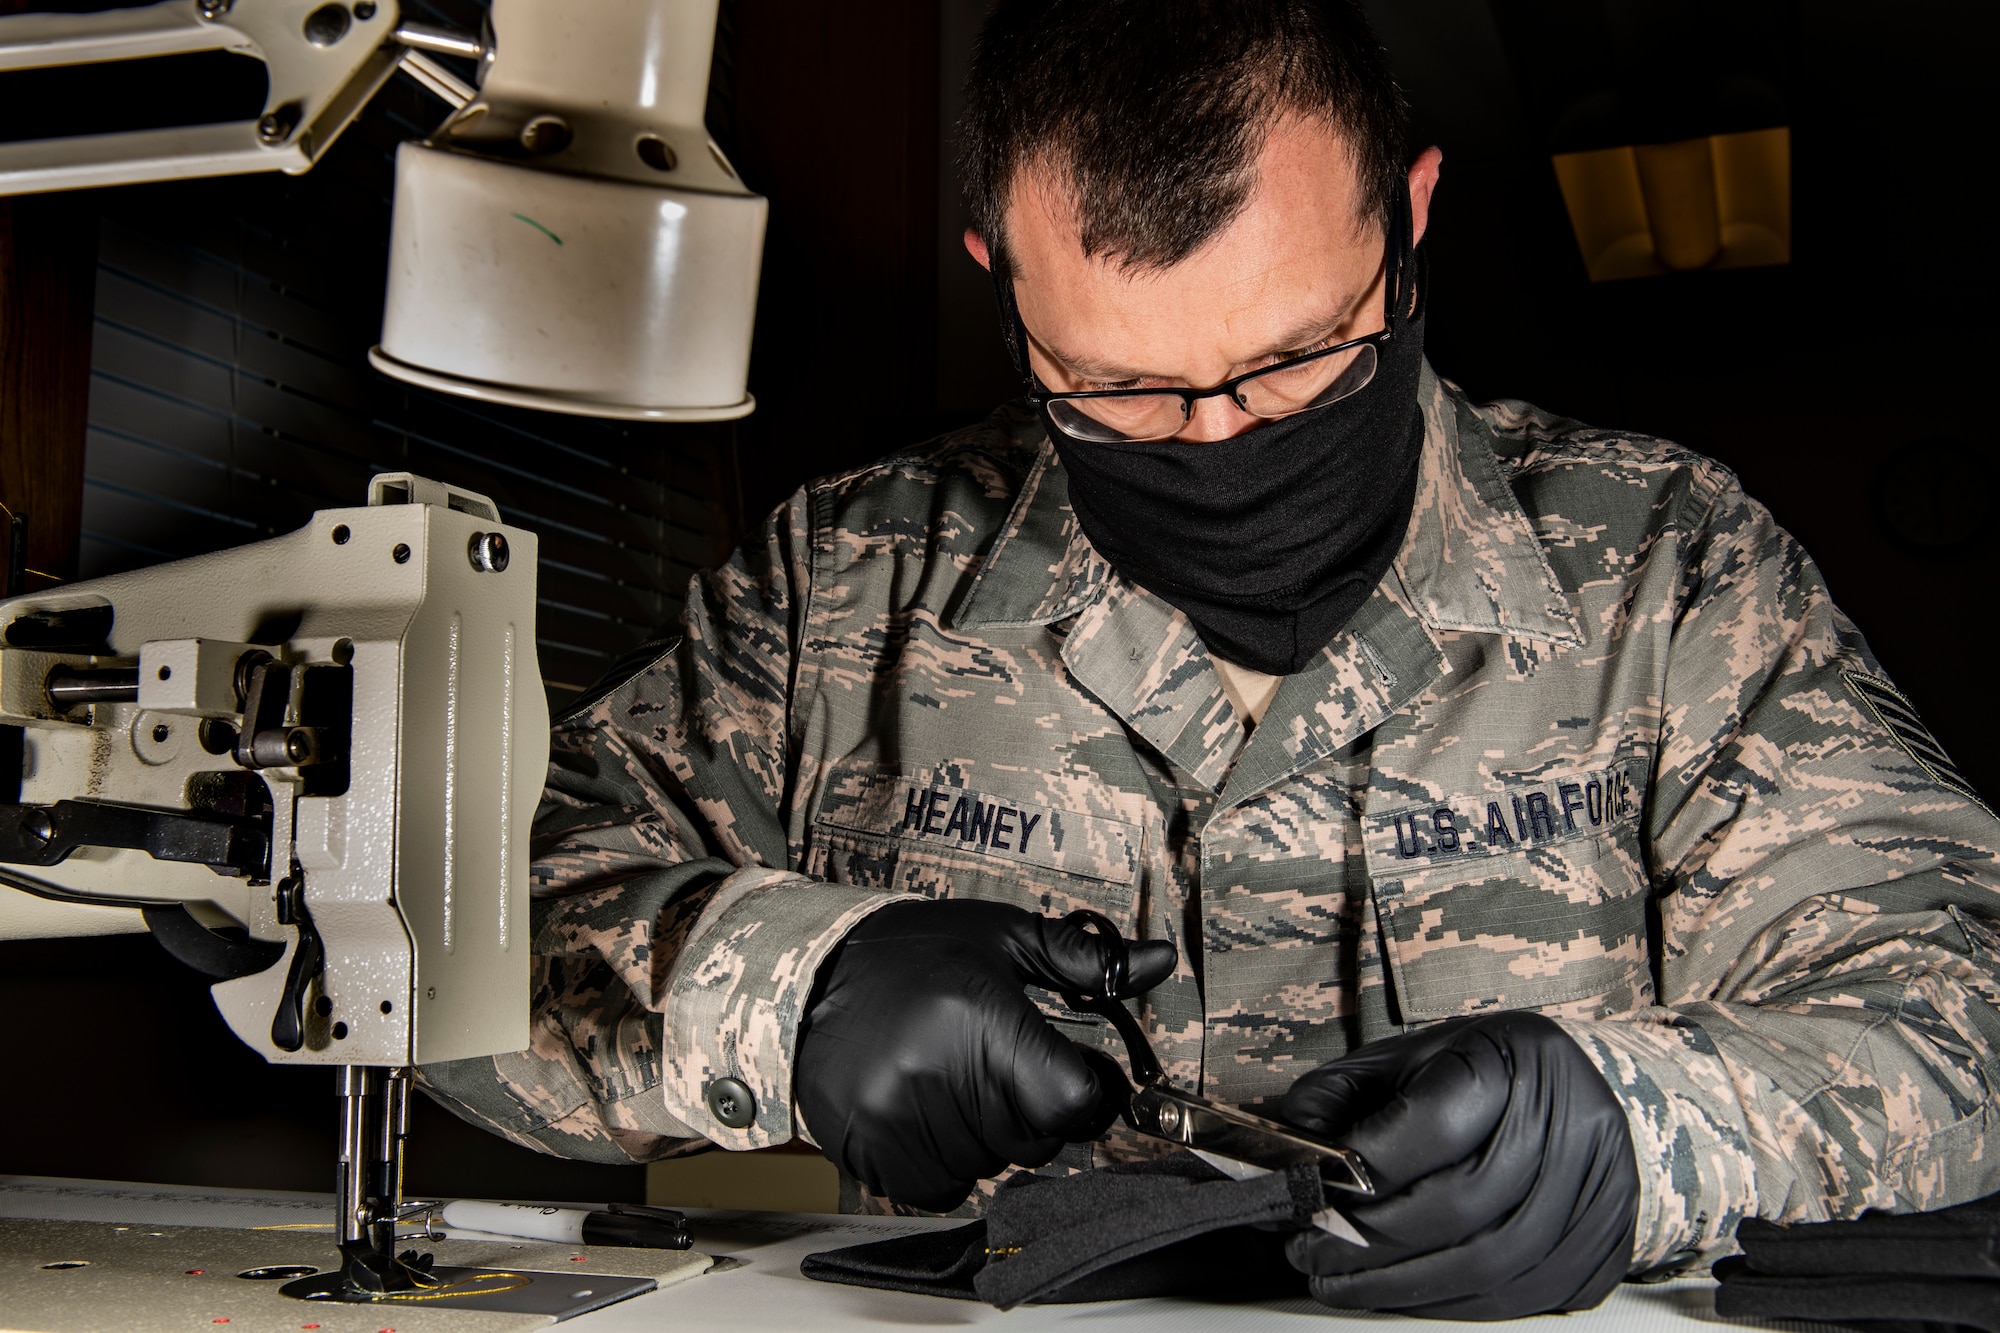 An aircraft flight equipment technician cutting material to make a cloth face mask.